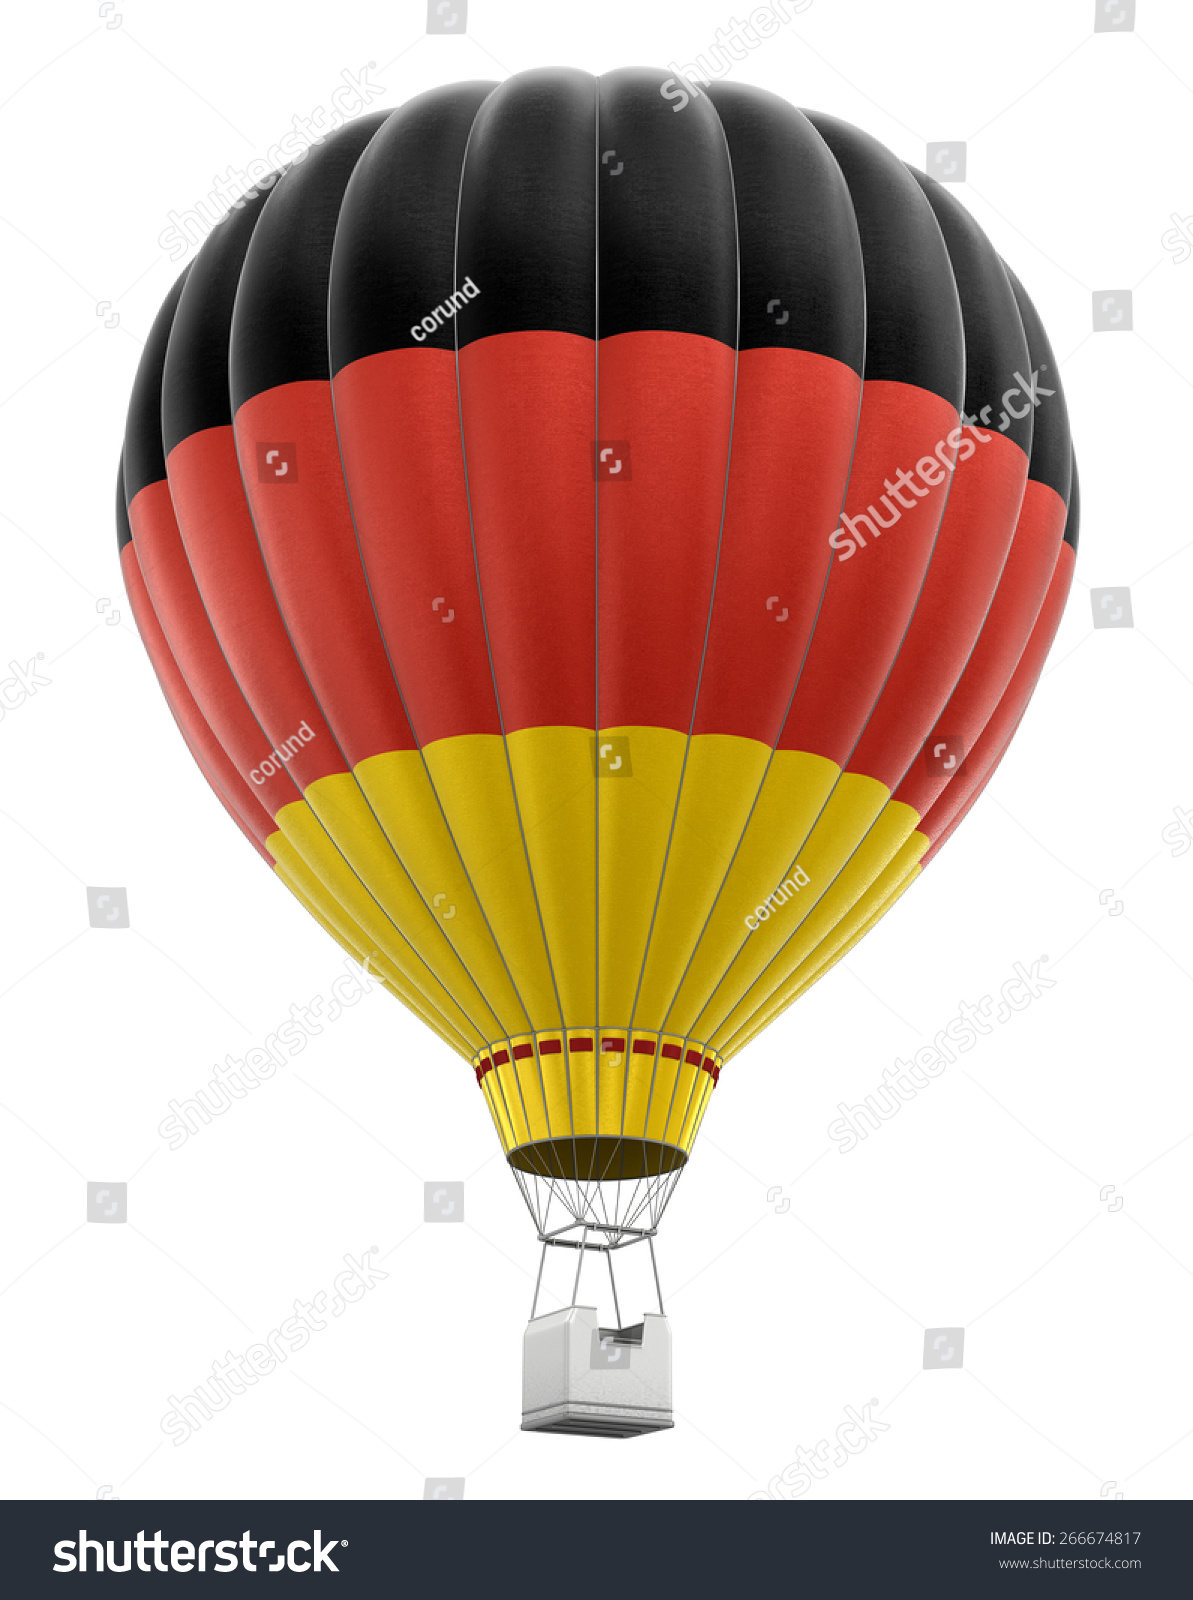 热气球与德国国旗(包括剪切路径) - 物体,符号\/标